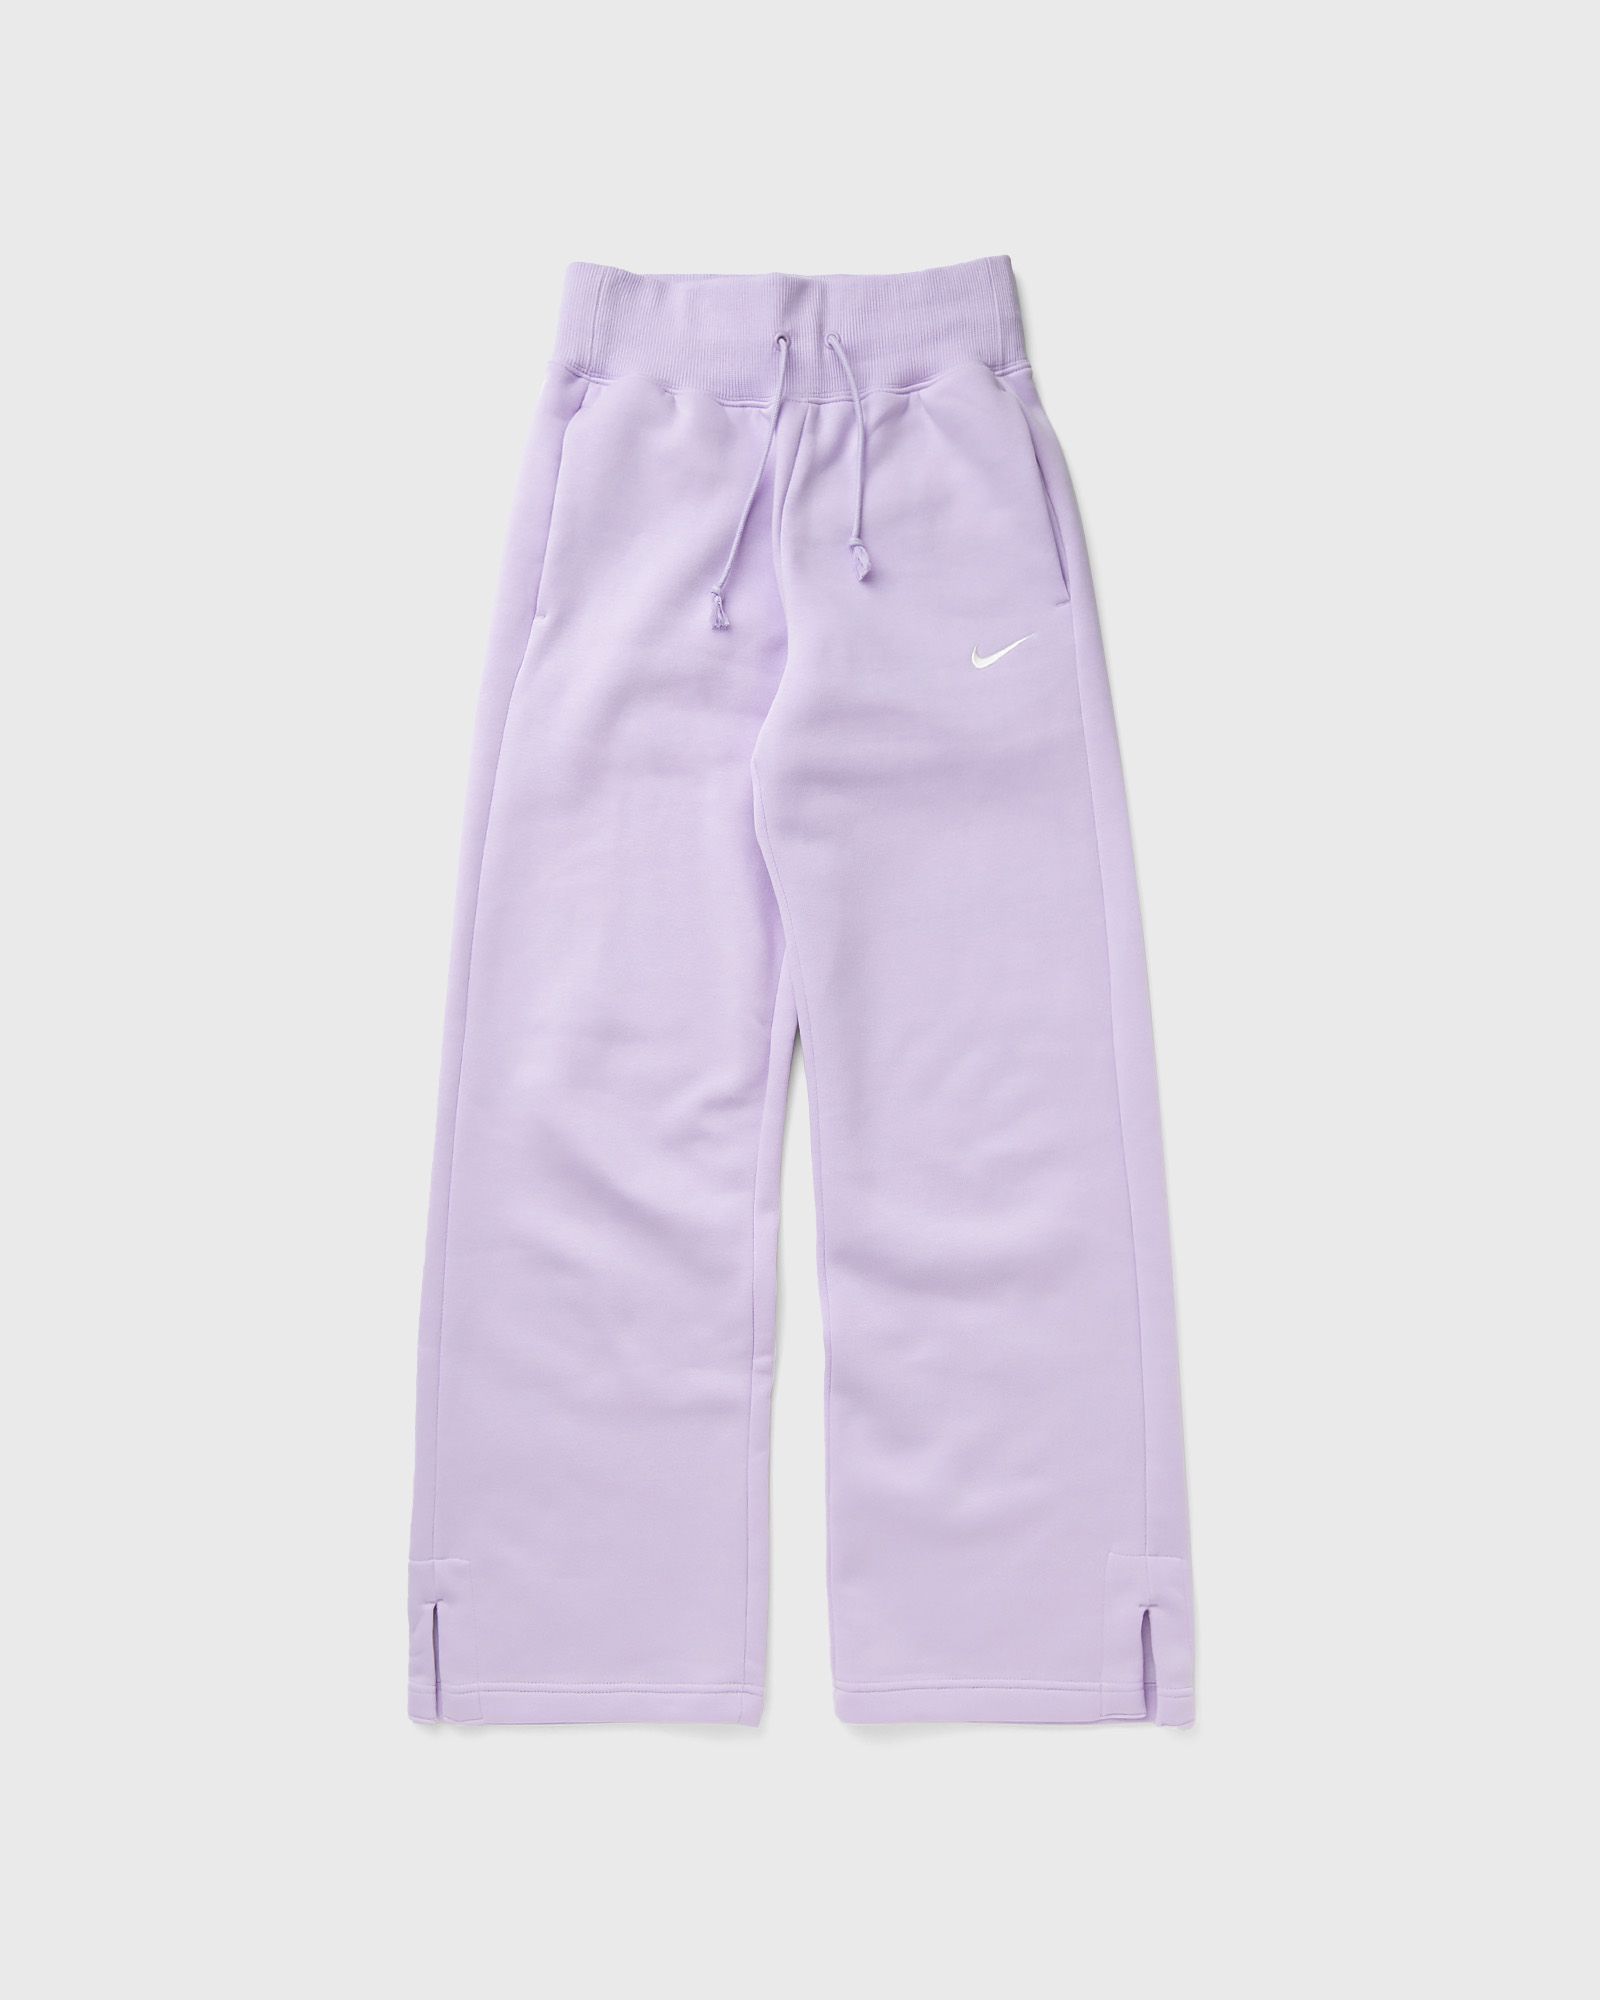 Nike - wmns phoenix fleece high-waisted wide-leg sweatpants women sweatpants purple in größe:l